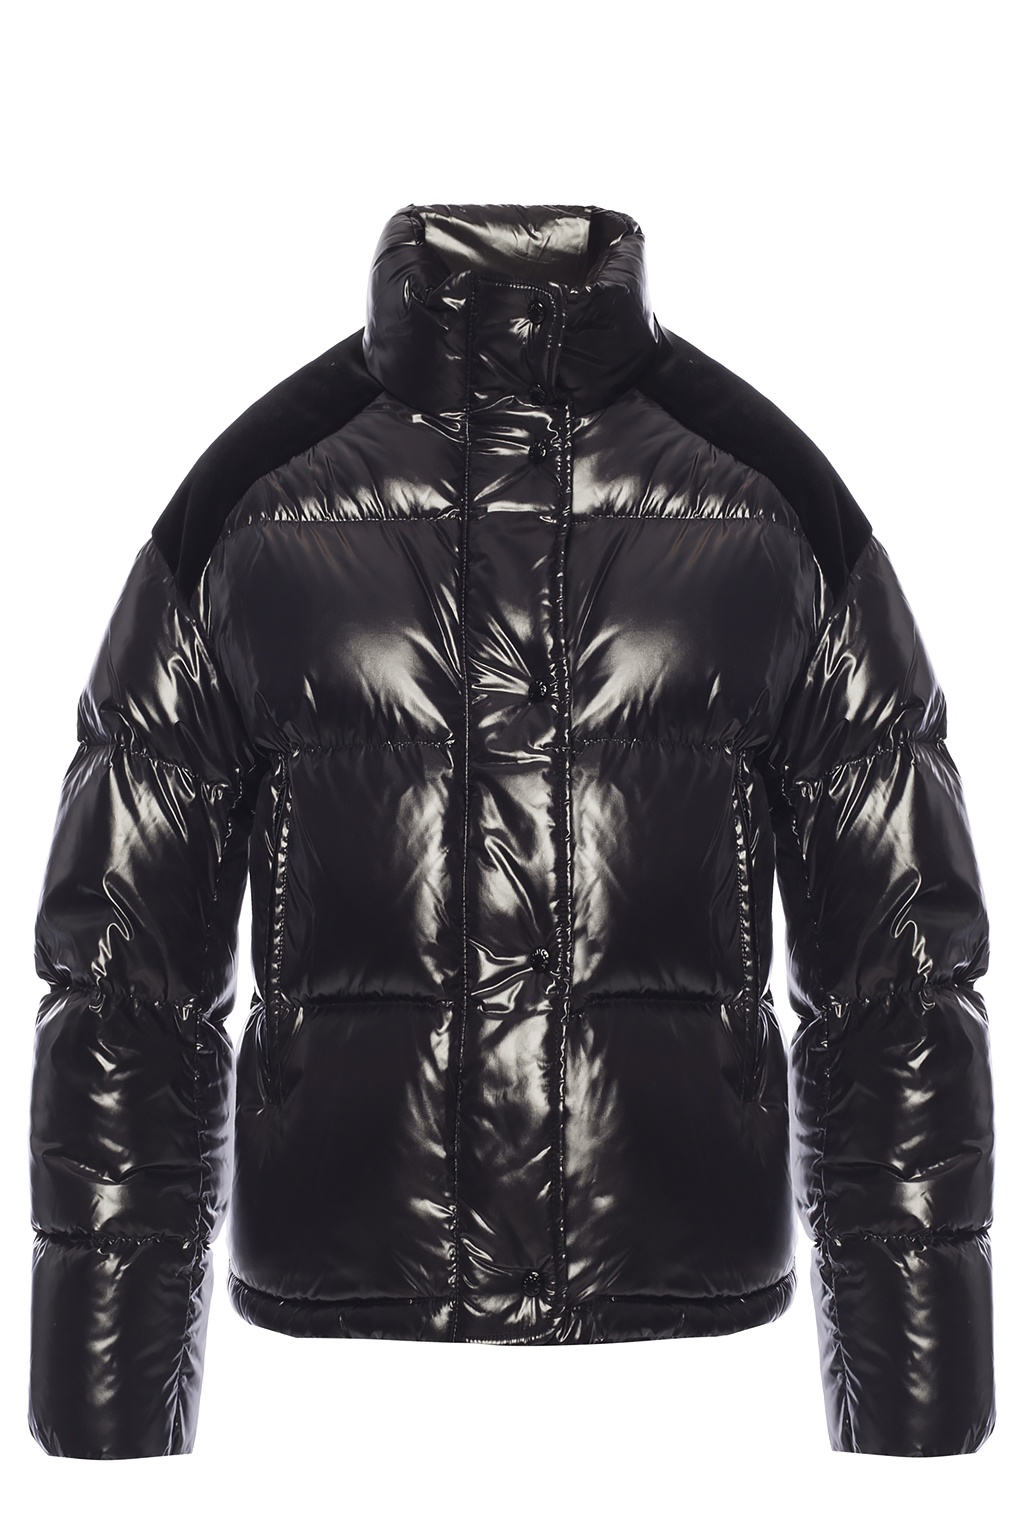 moncler chouette jacket black